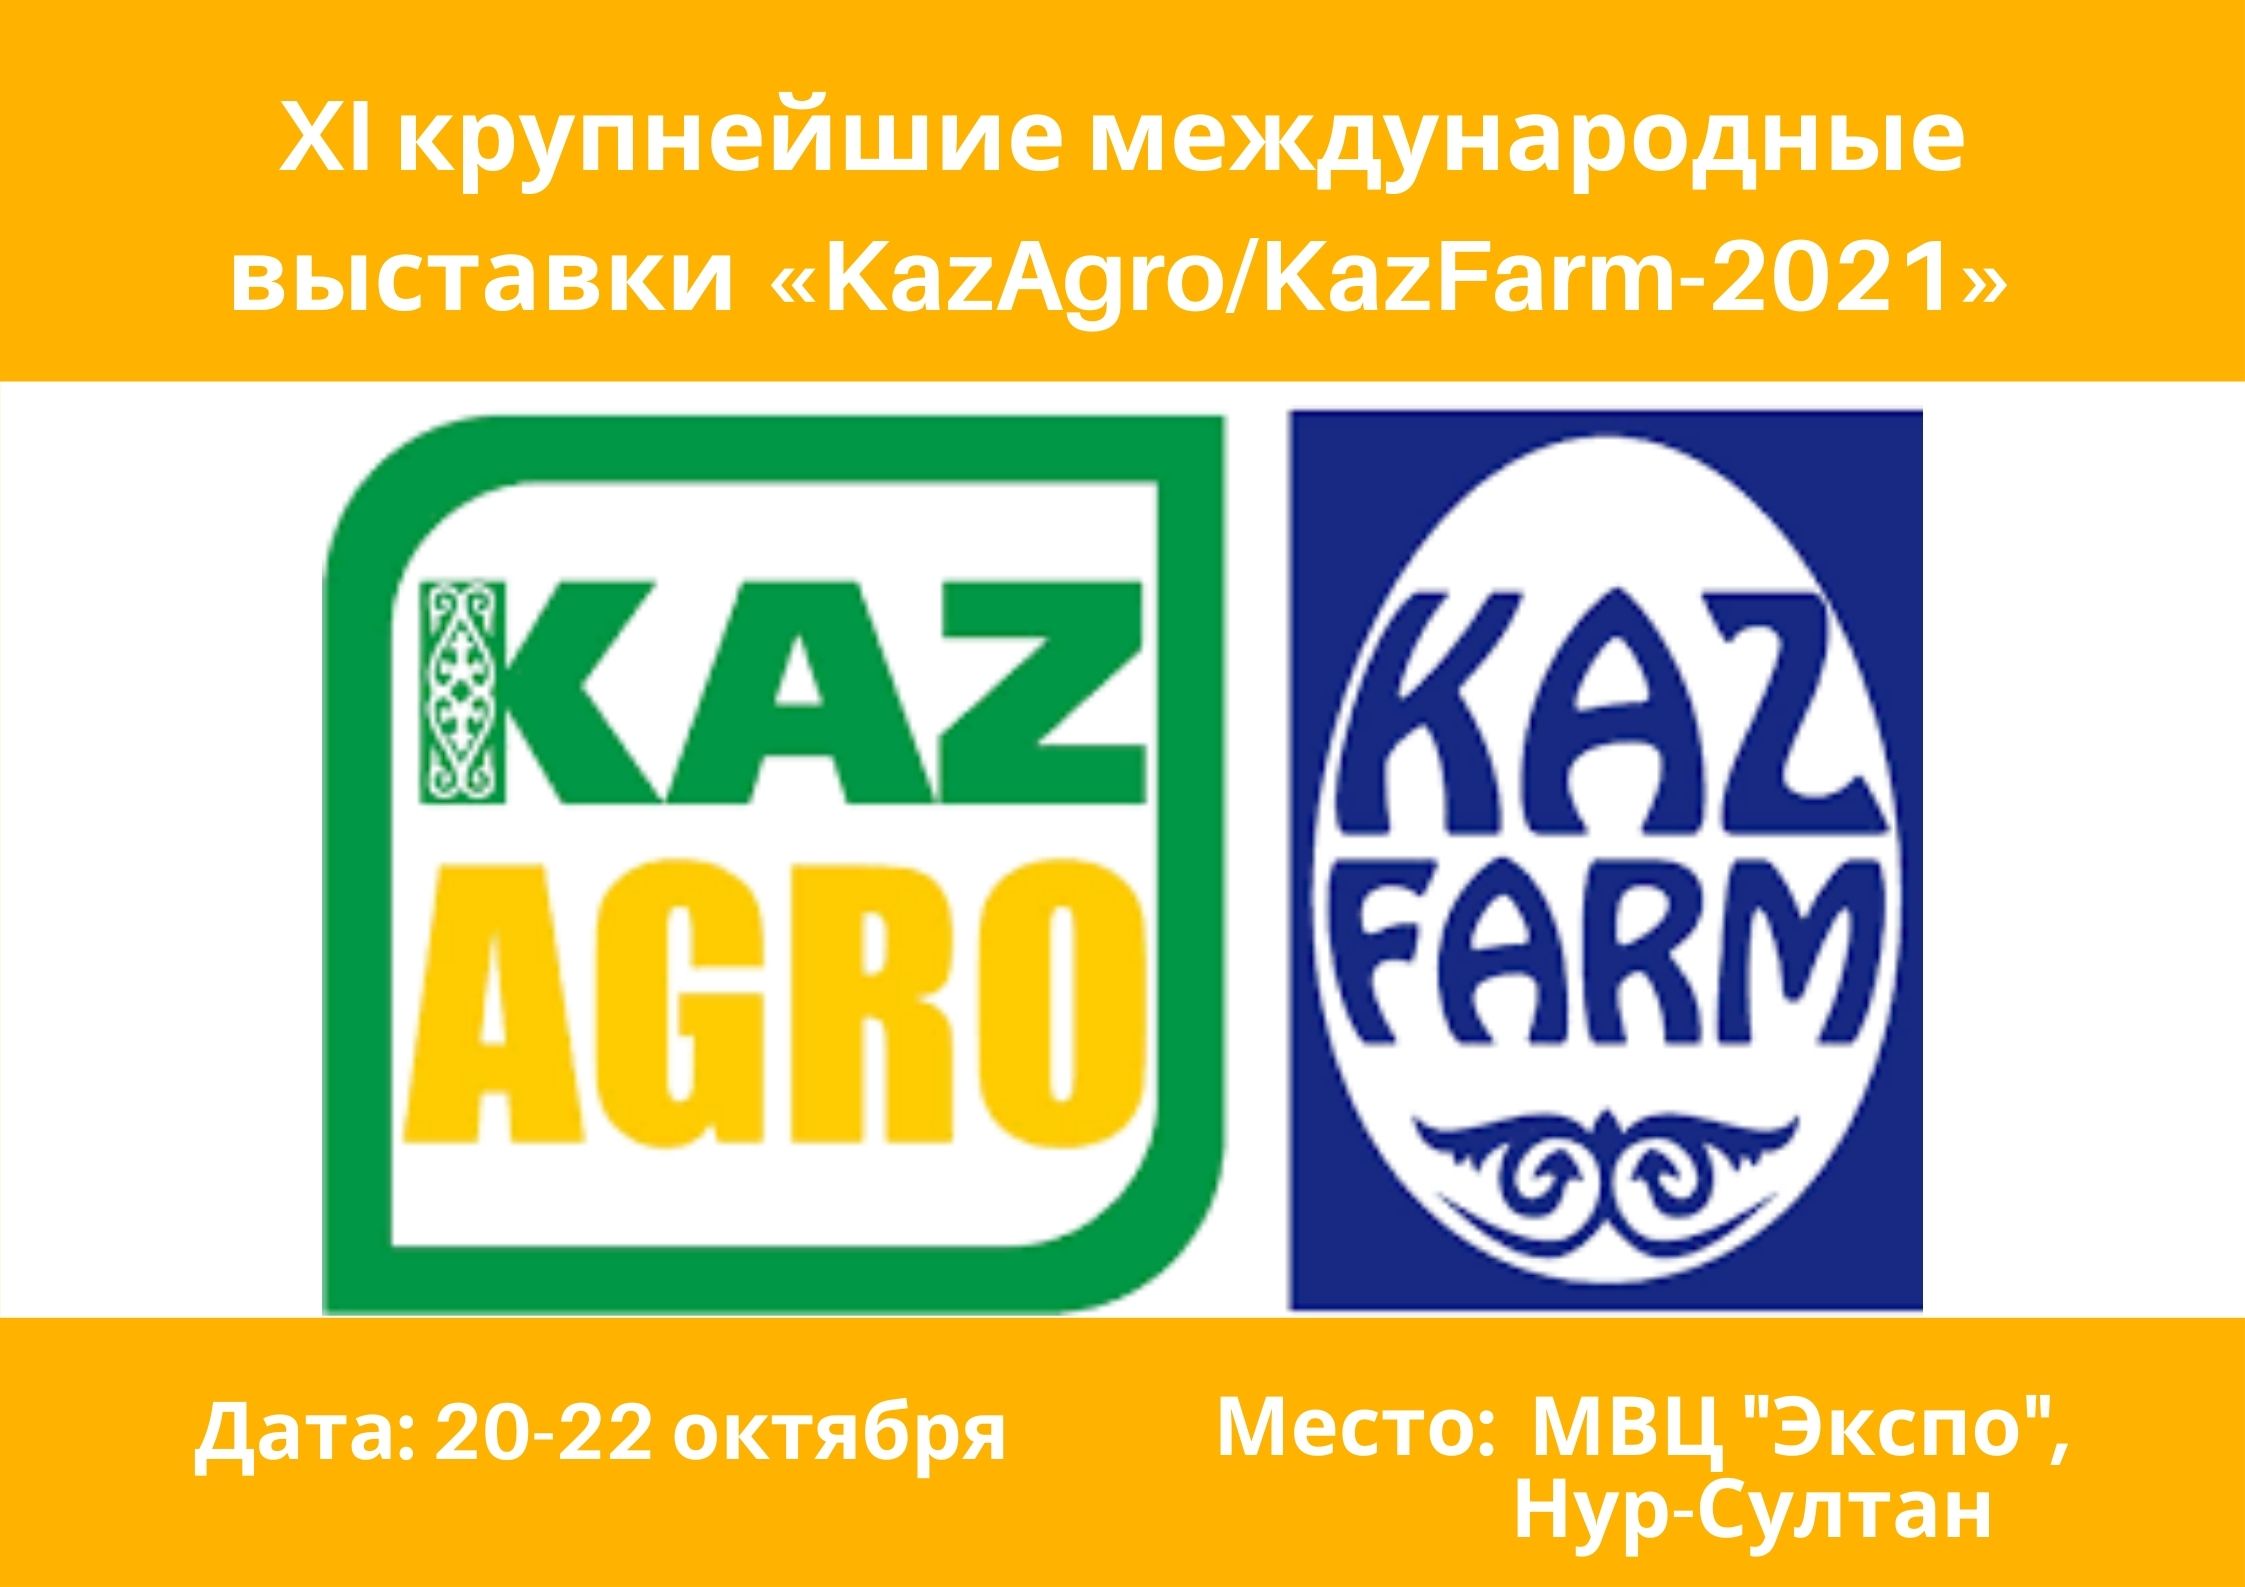 Международная аграрная выставка сельского хозяйства «КАЗАГРО/КАЗФАРМ 2021»